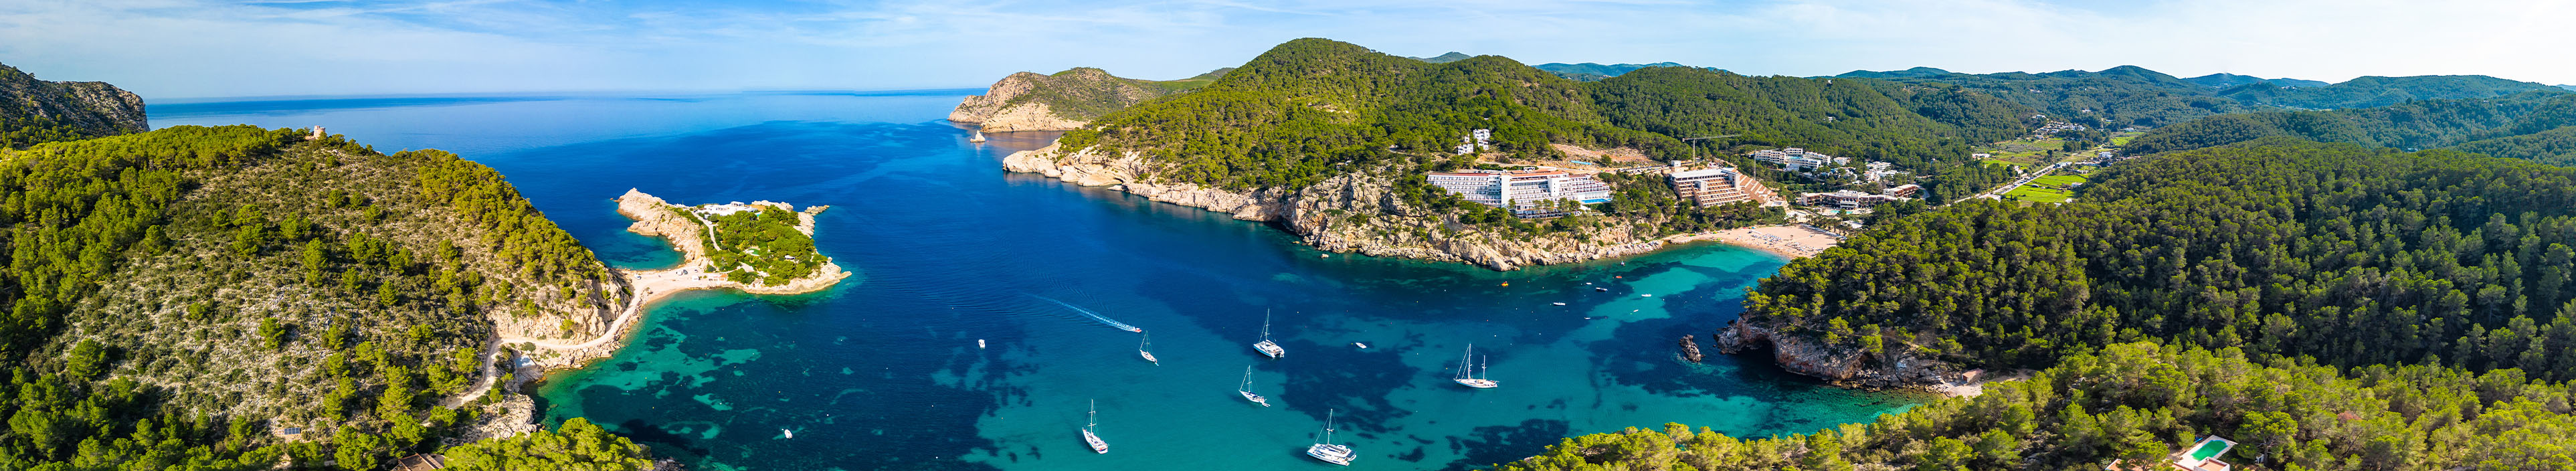 Bucht auf Ibiza mit türkisem Meer, Booten, Wäldern.